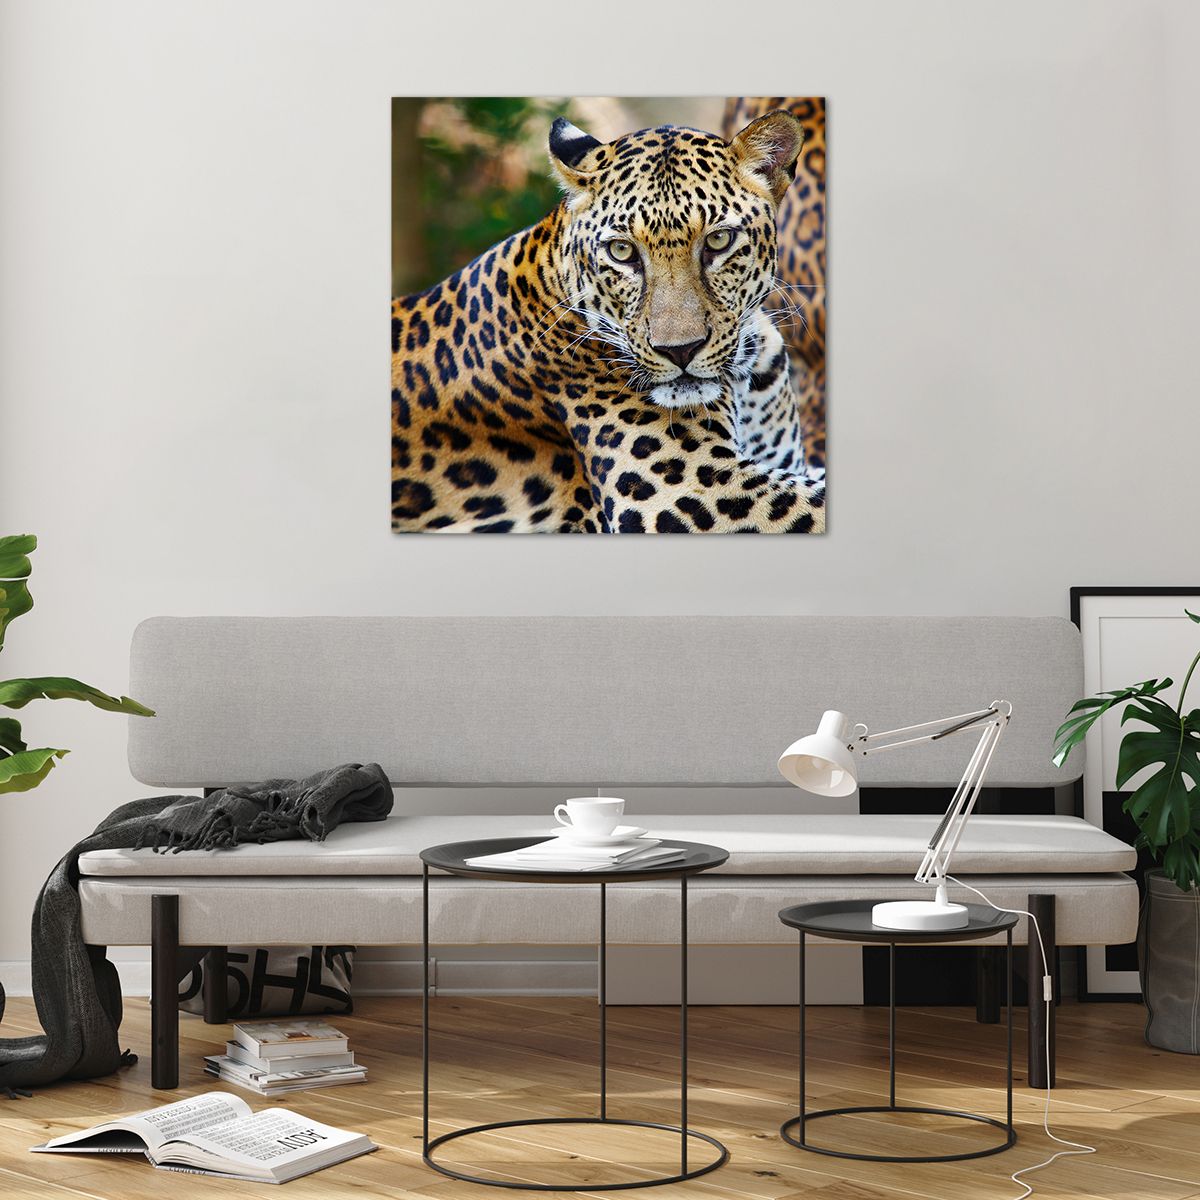 Bilder auf glas Tiere, Bilder auf glas Leopard, Bilder auf glas Afrika, Bilder auf glas Urwald, Bilder auf glas Wildes Tier